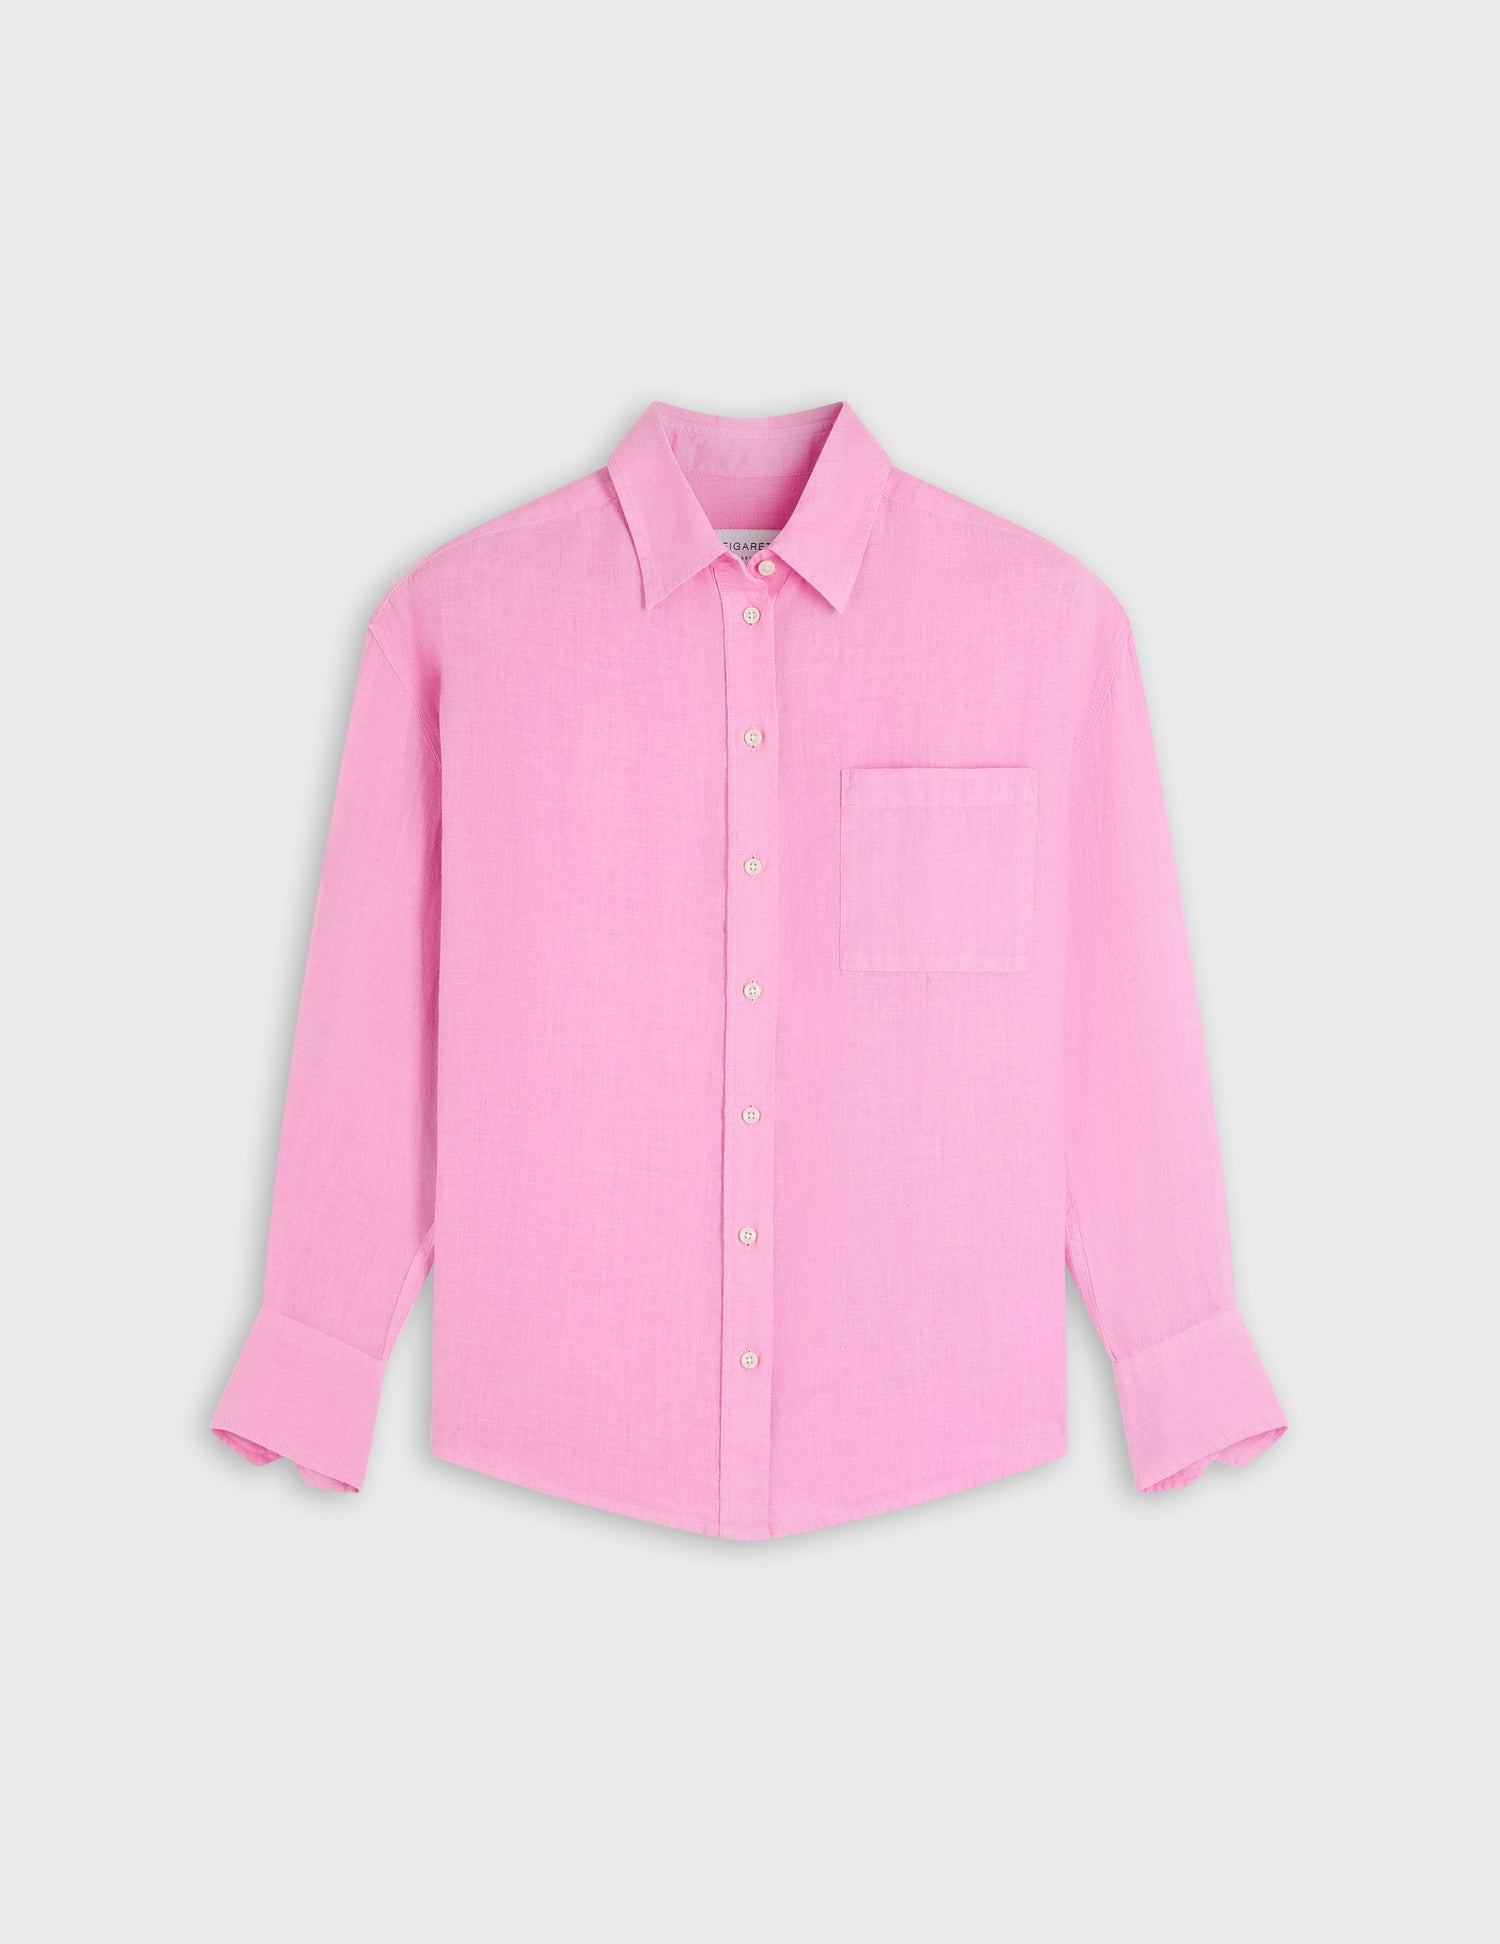 Charlotte shirt in pink linen - Linen - Shirt Collar#4